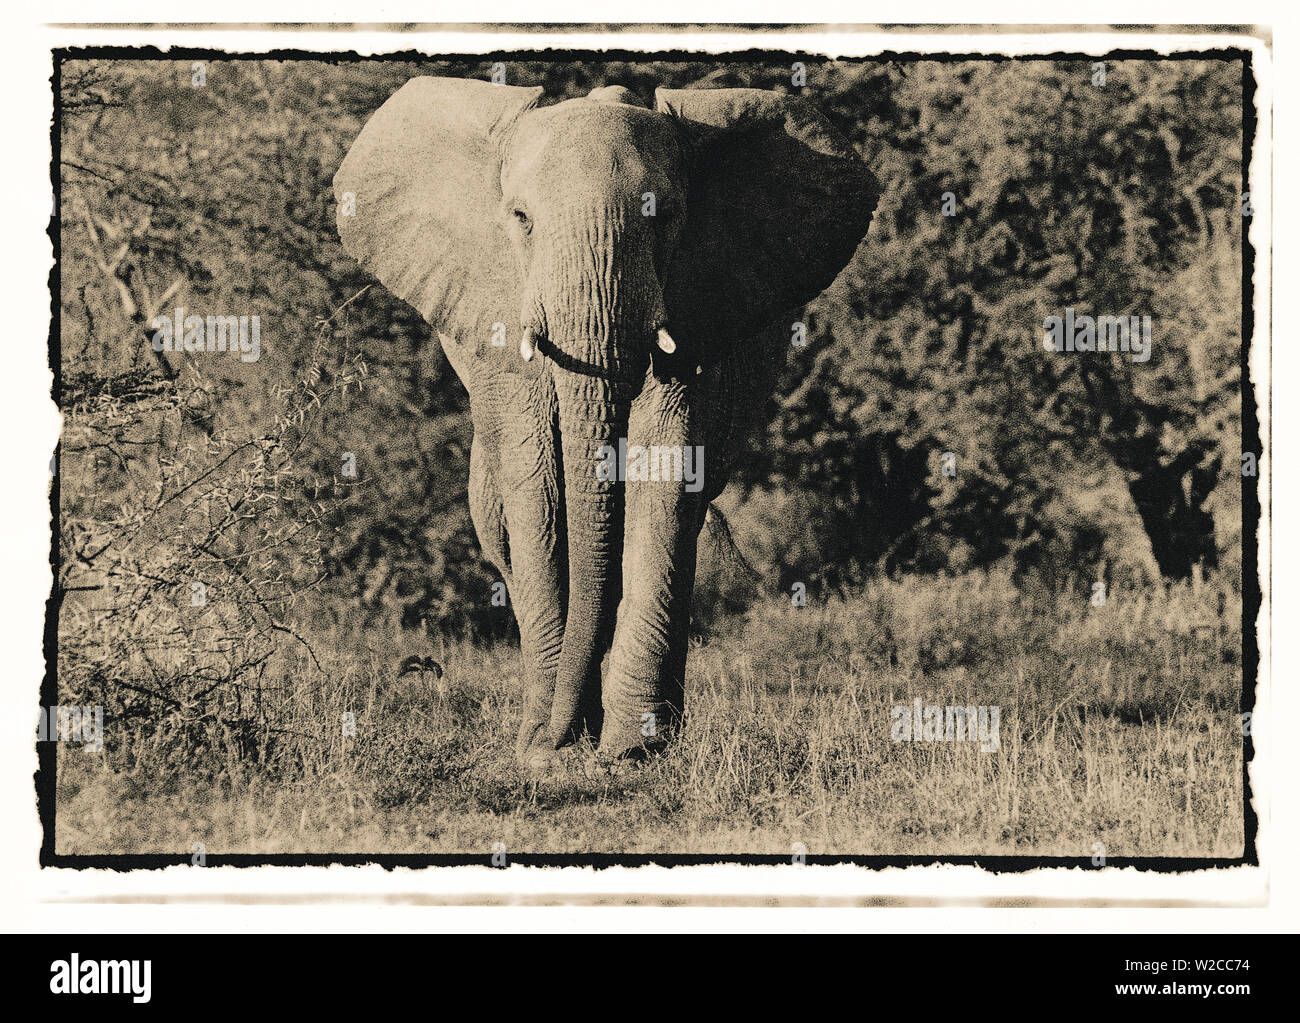 Elefanten, zu Fuß in Richtung Kamera im afrikanischen Busch, Tansania Stockfoto